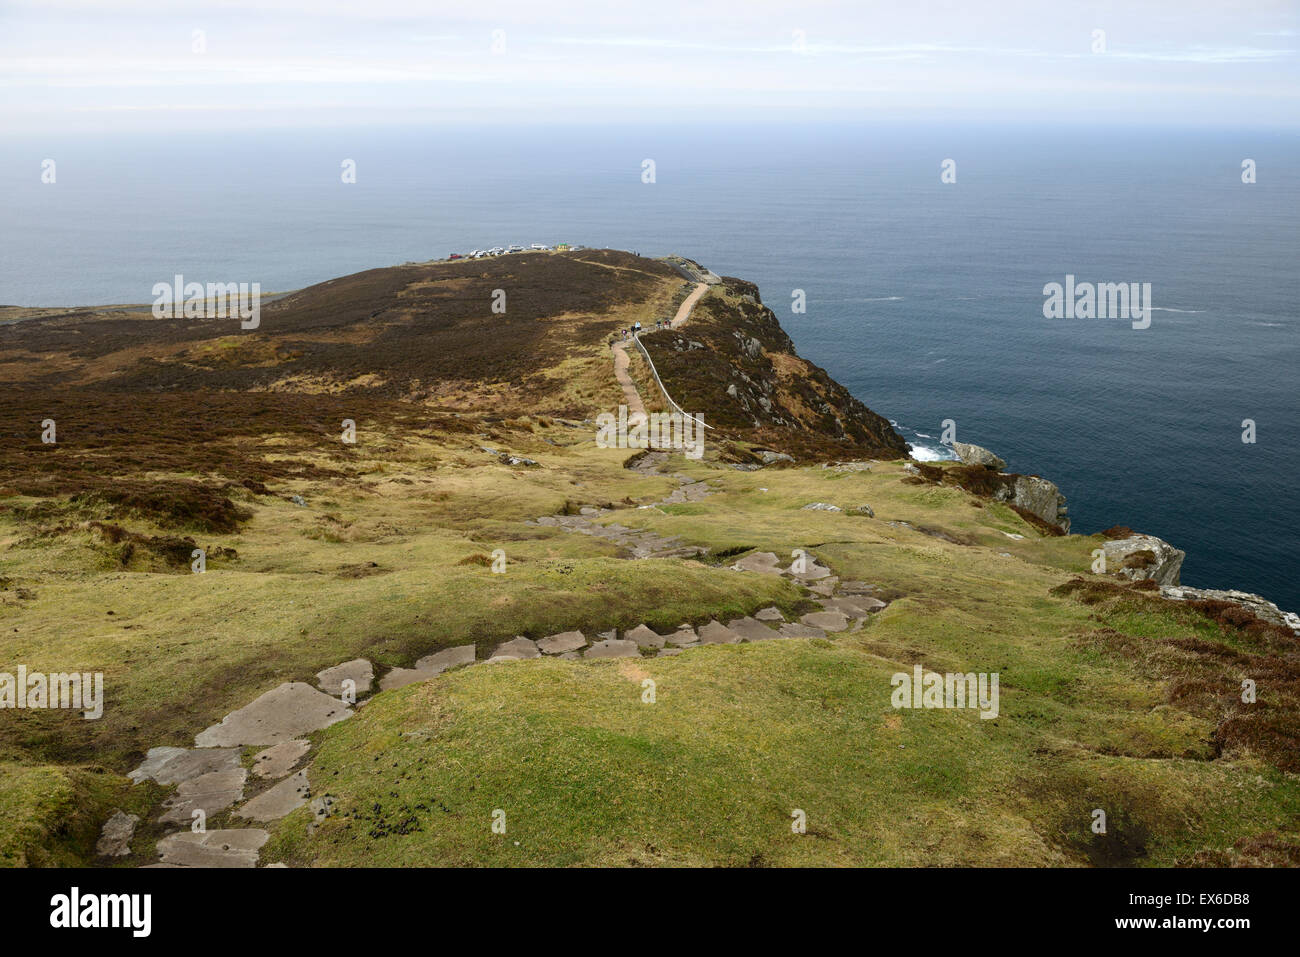 Falaises Slieve League Donegal seascape paysage sud-ouest du chemin plus haute chute en Europe 600m vue sur l'océan Atlantique RM L'Irlande Banque D'Images